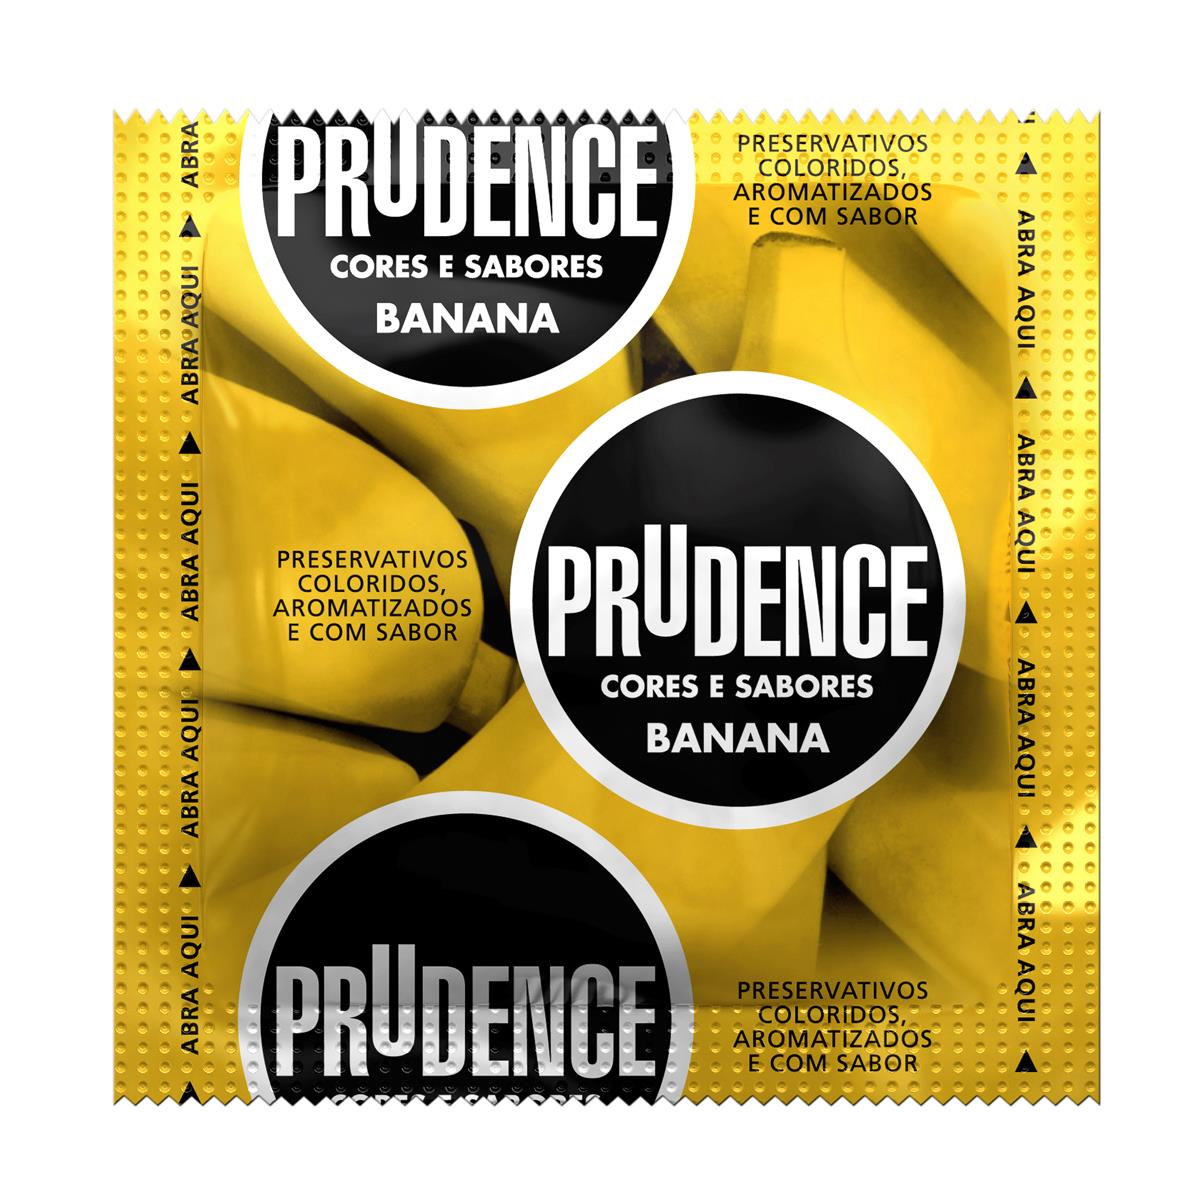 Preservativos Cores e Sabores Banana Prudence